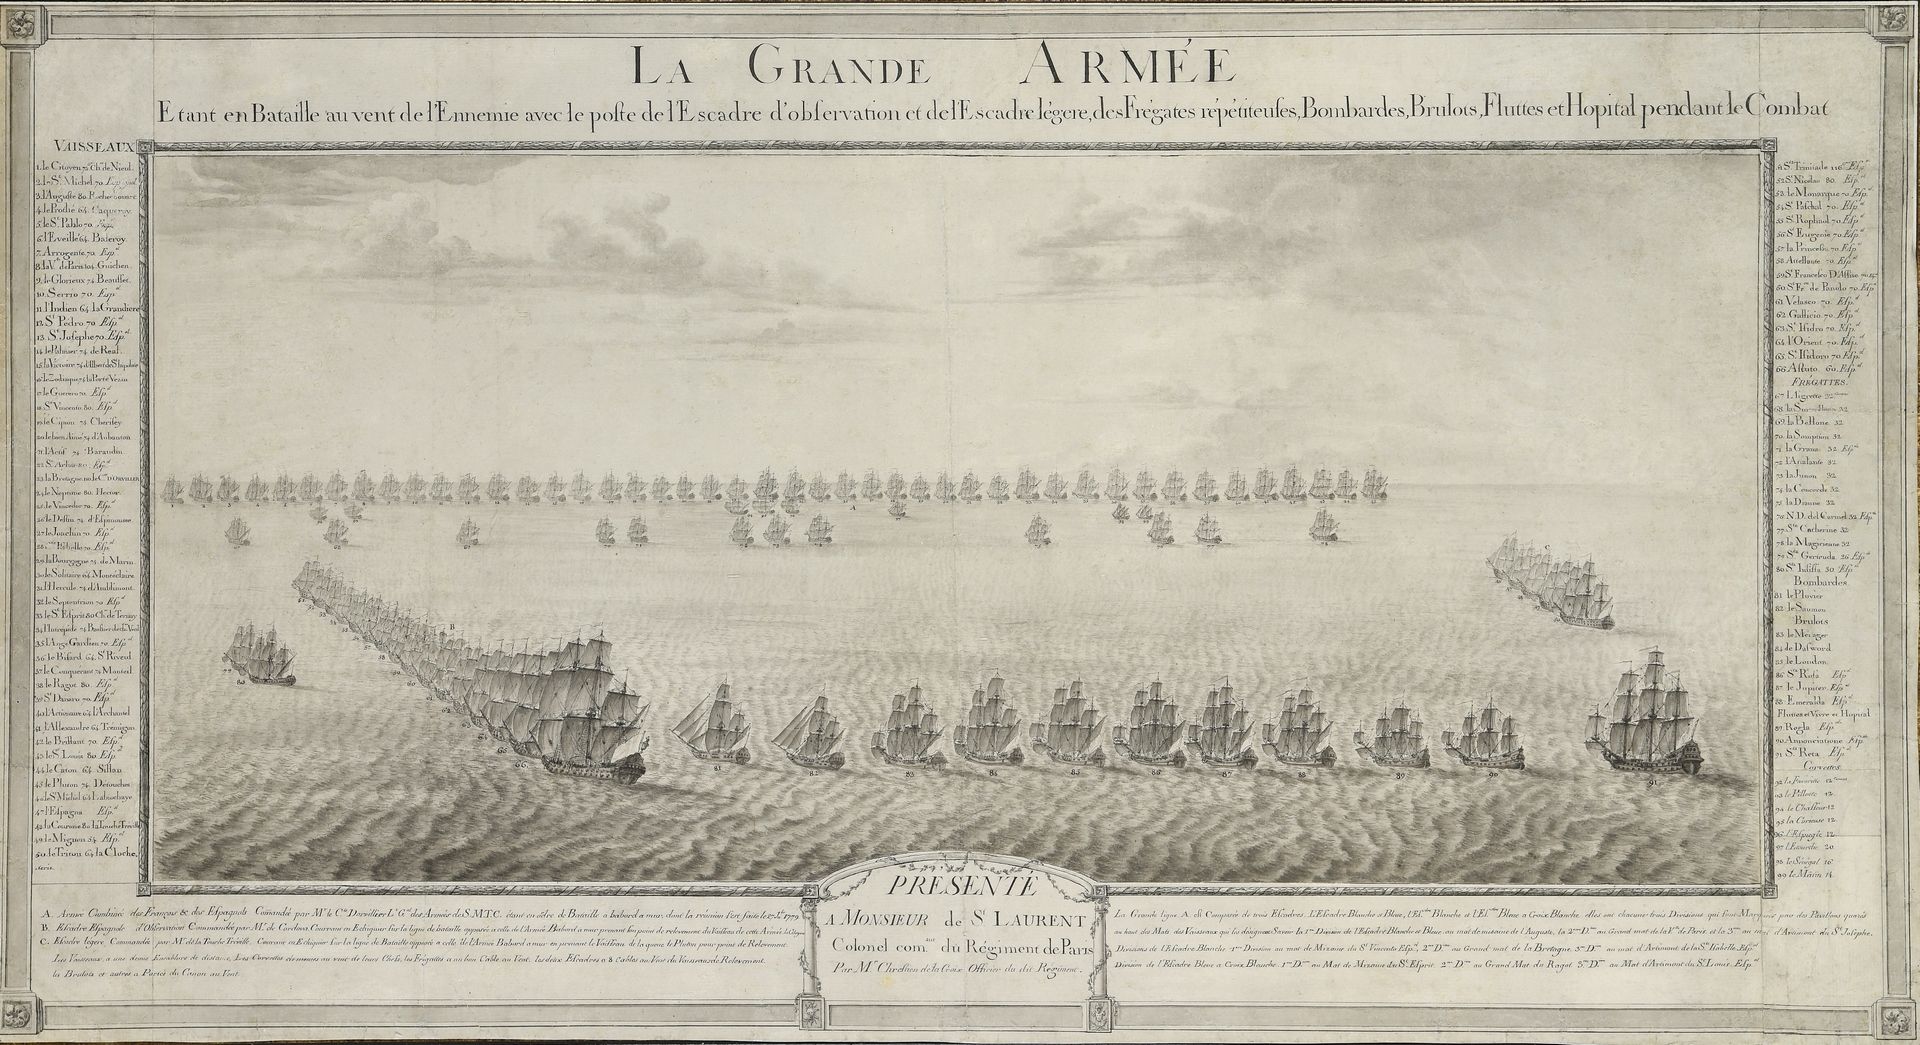 Null Chrestien de LA CROIX (Graf)
Offizier von 1753 bis 1787

" Die Große Armee &hellip;